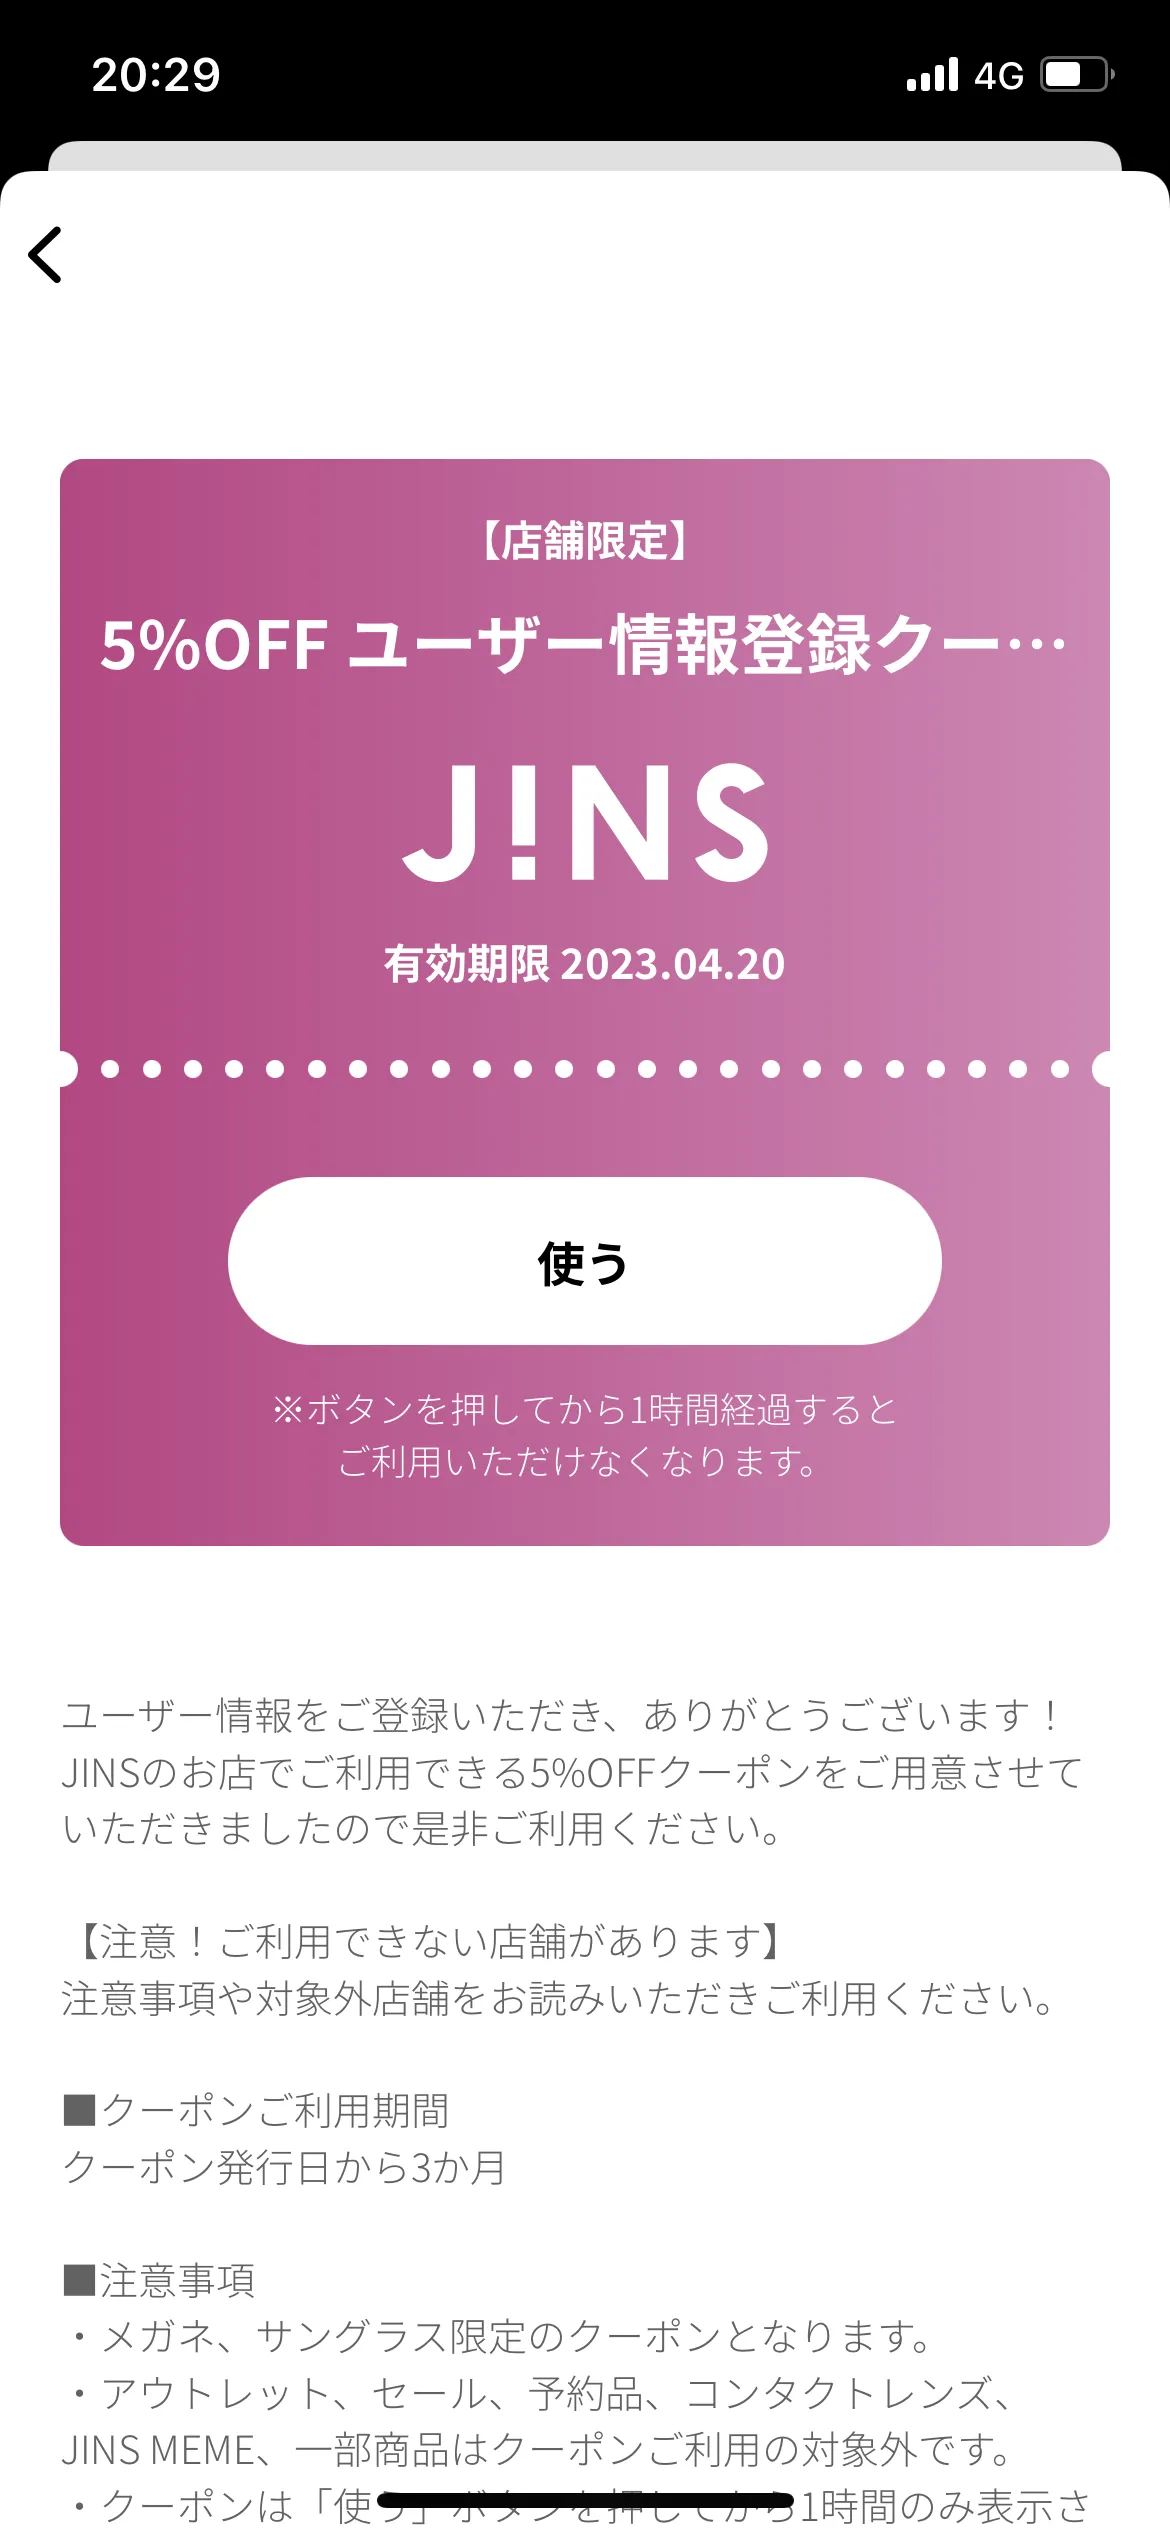 JINS ホーム screen